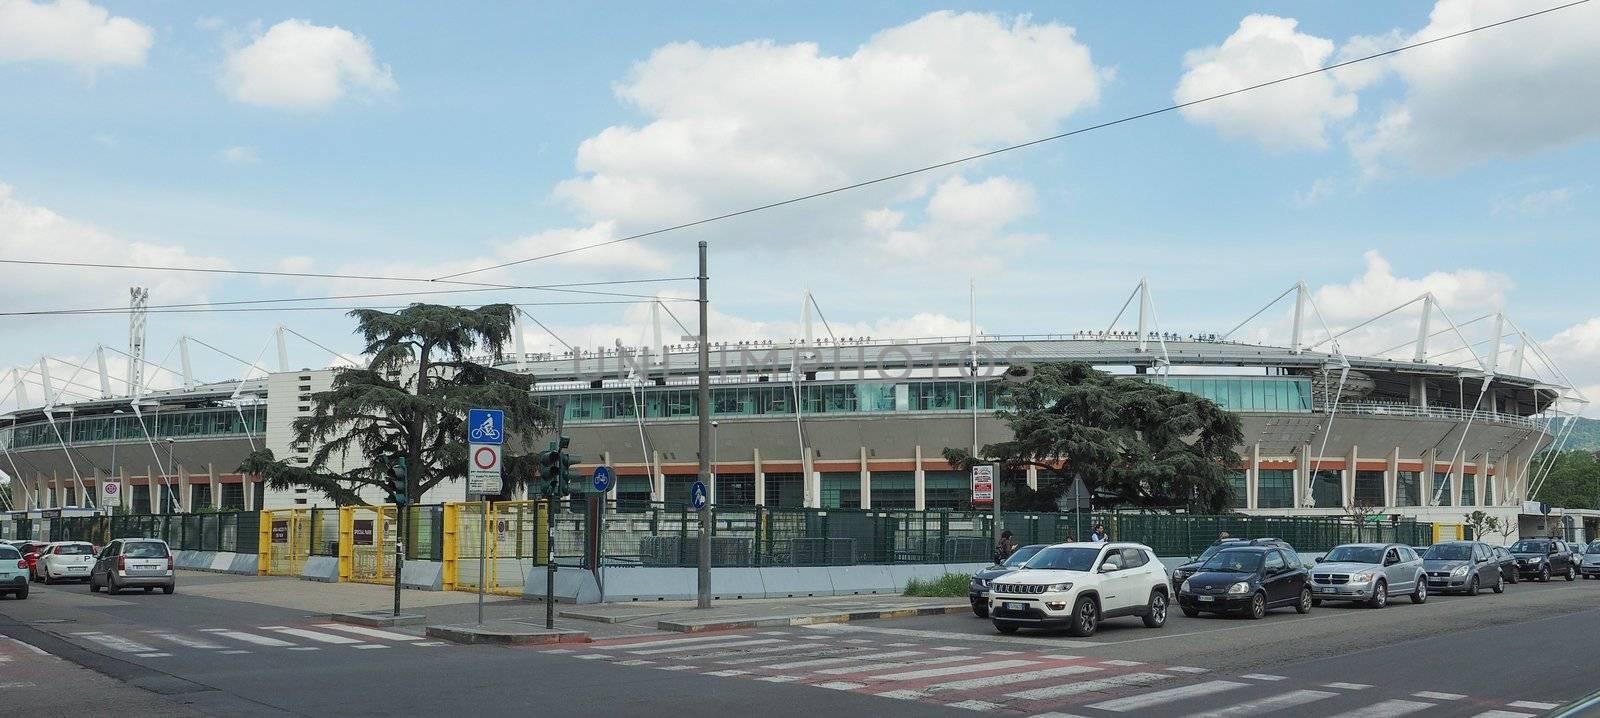 Stadio Comunale stadium in Turin by claudiodivizia